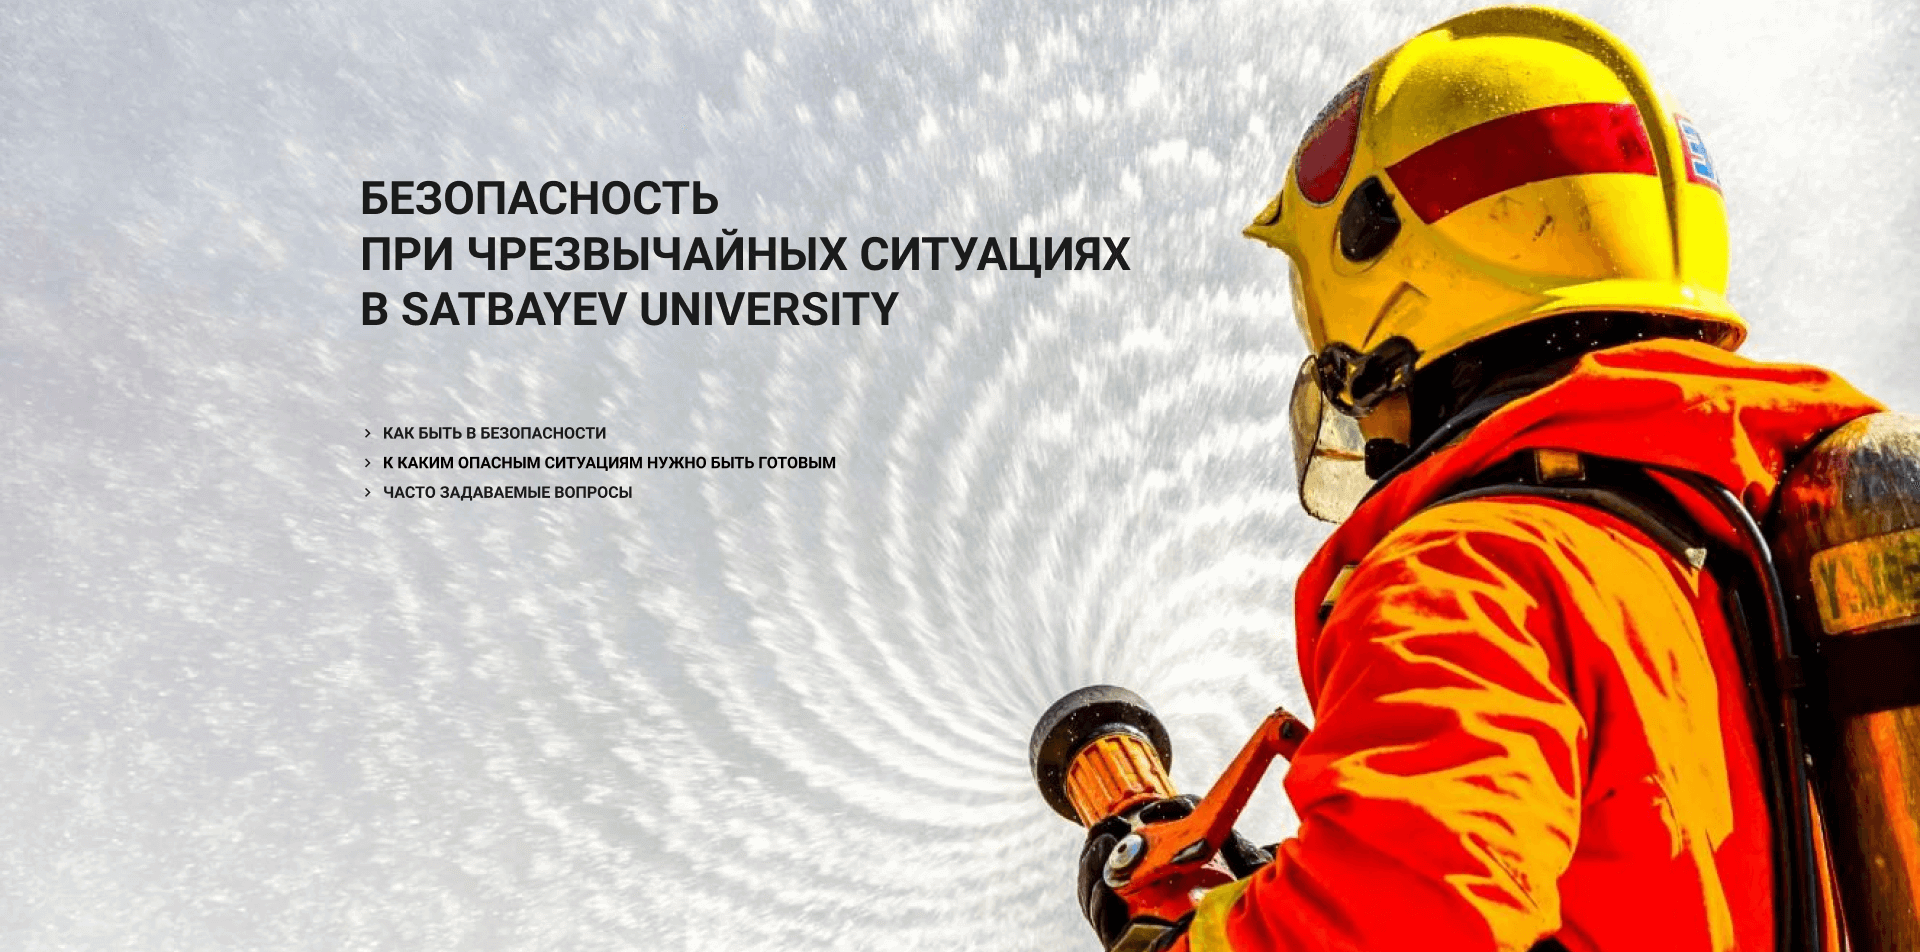 Satbayev University emergency